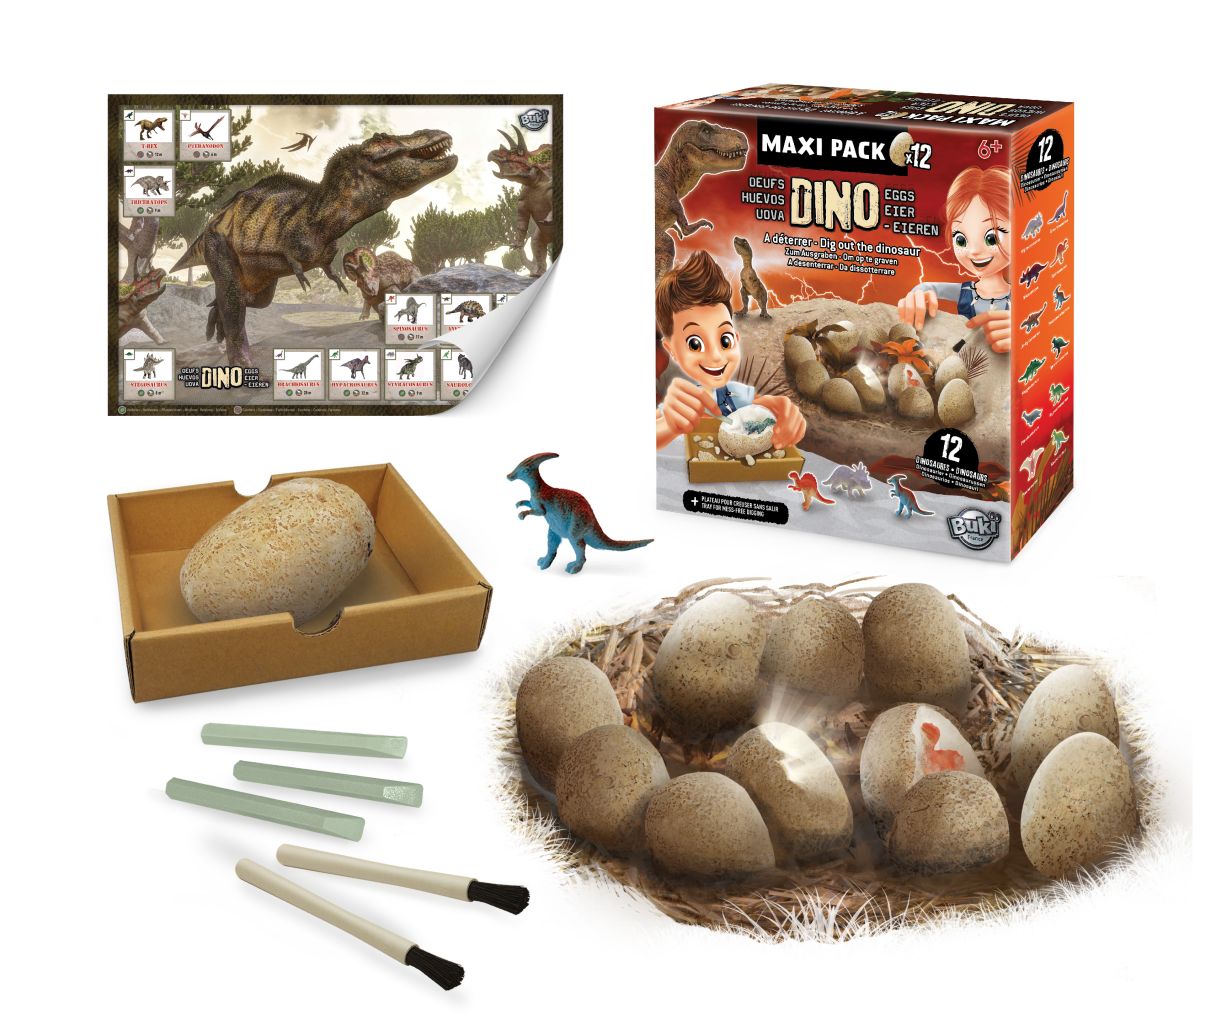 Dino Egg Maxi Pack